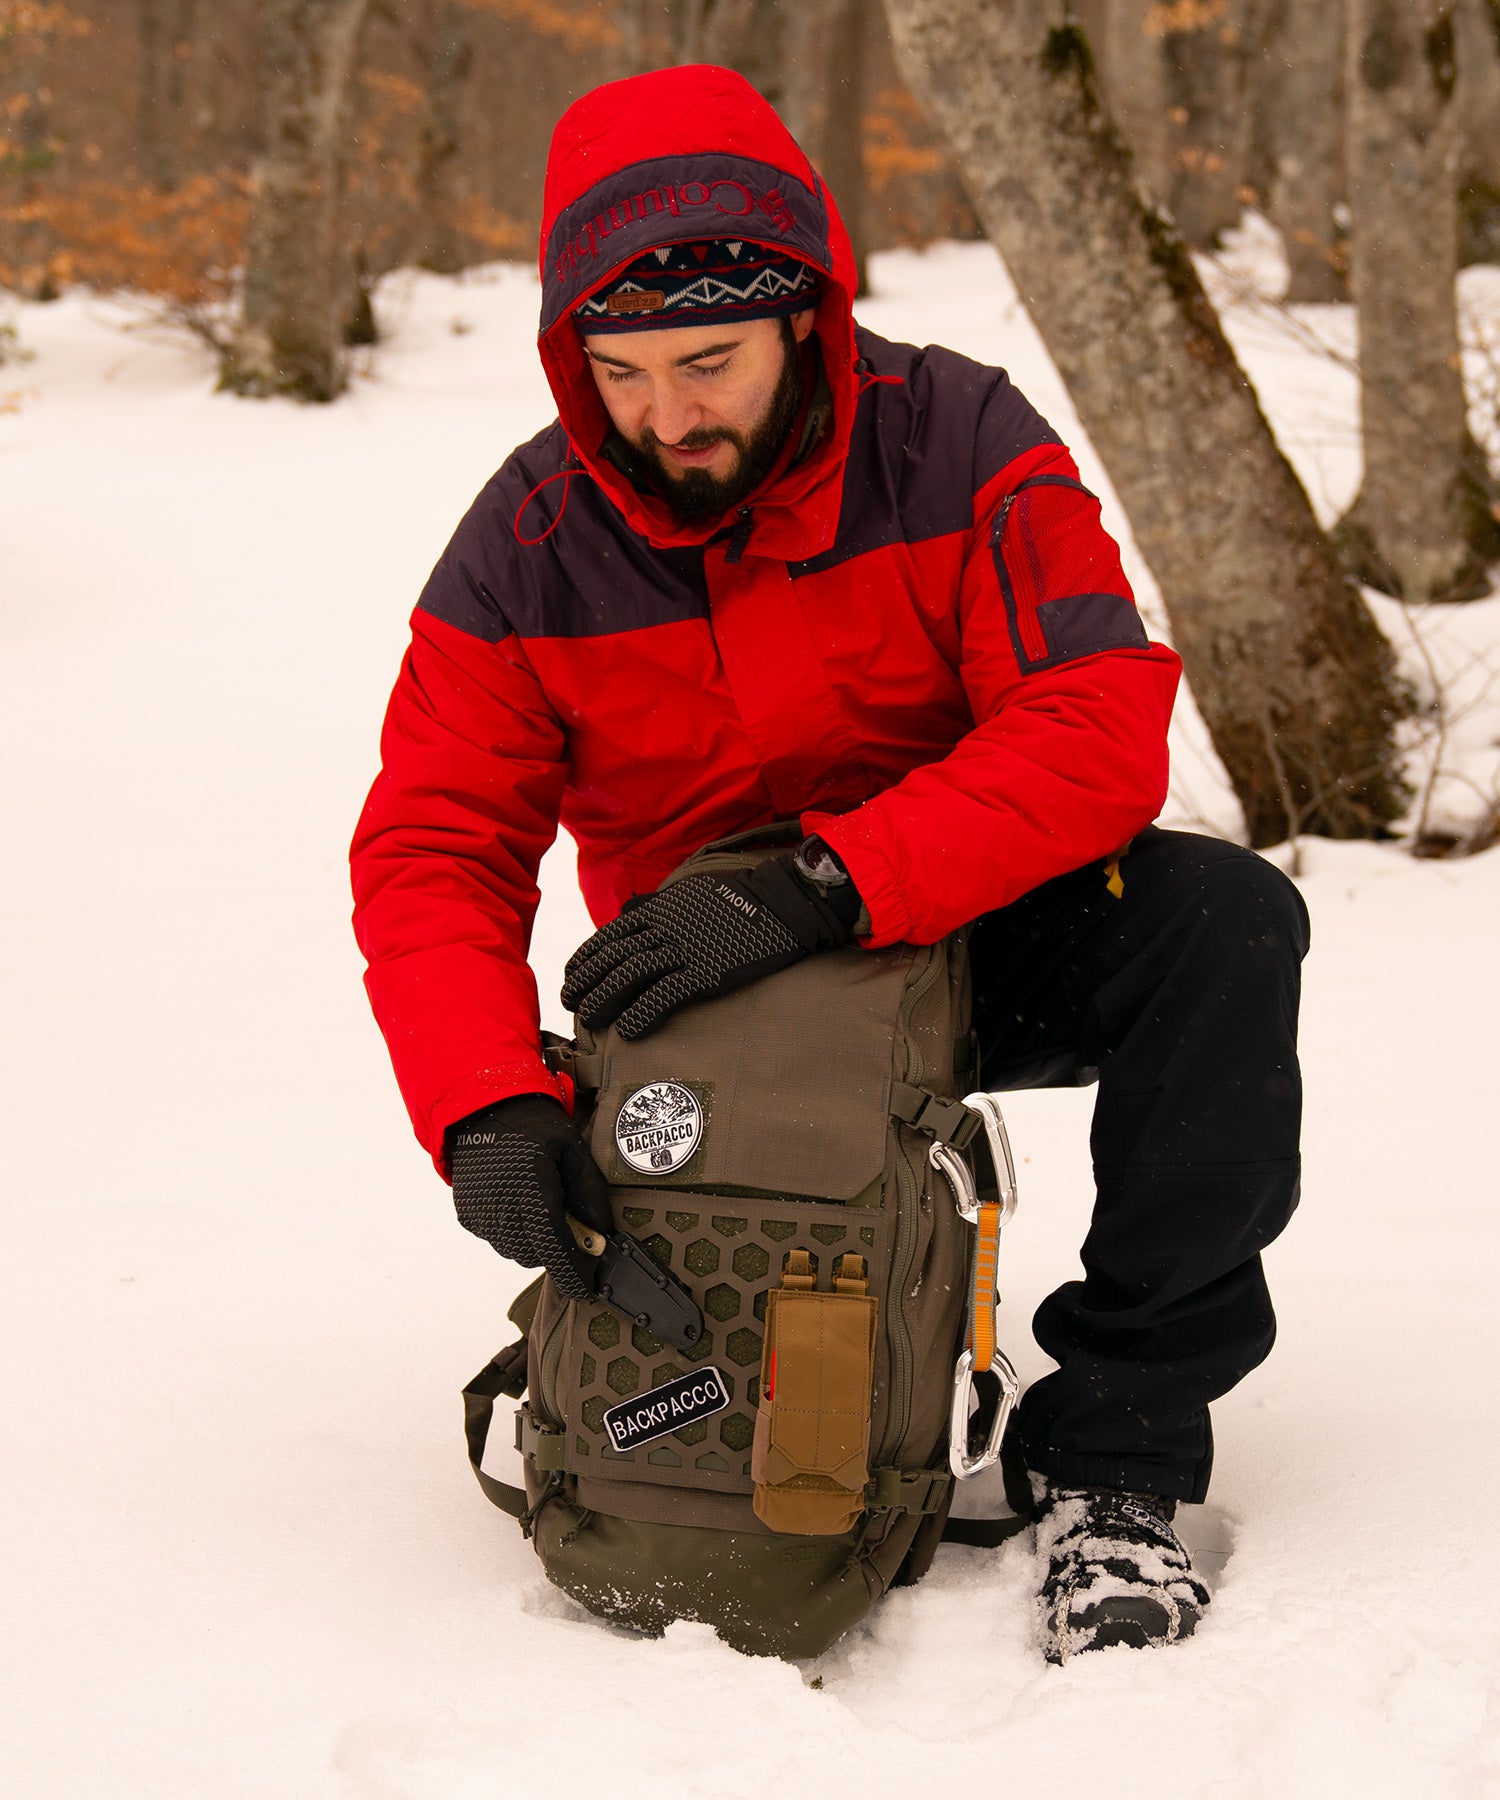 Paolo di backpacco estrae il coltello Izula 2 dallo zaino AMP24 Ranger Green durante un'escursione in montagna con la neve